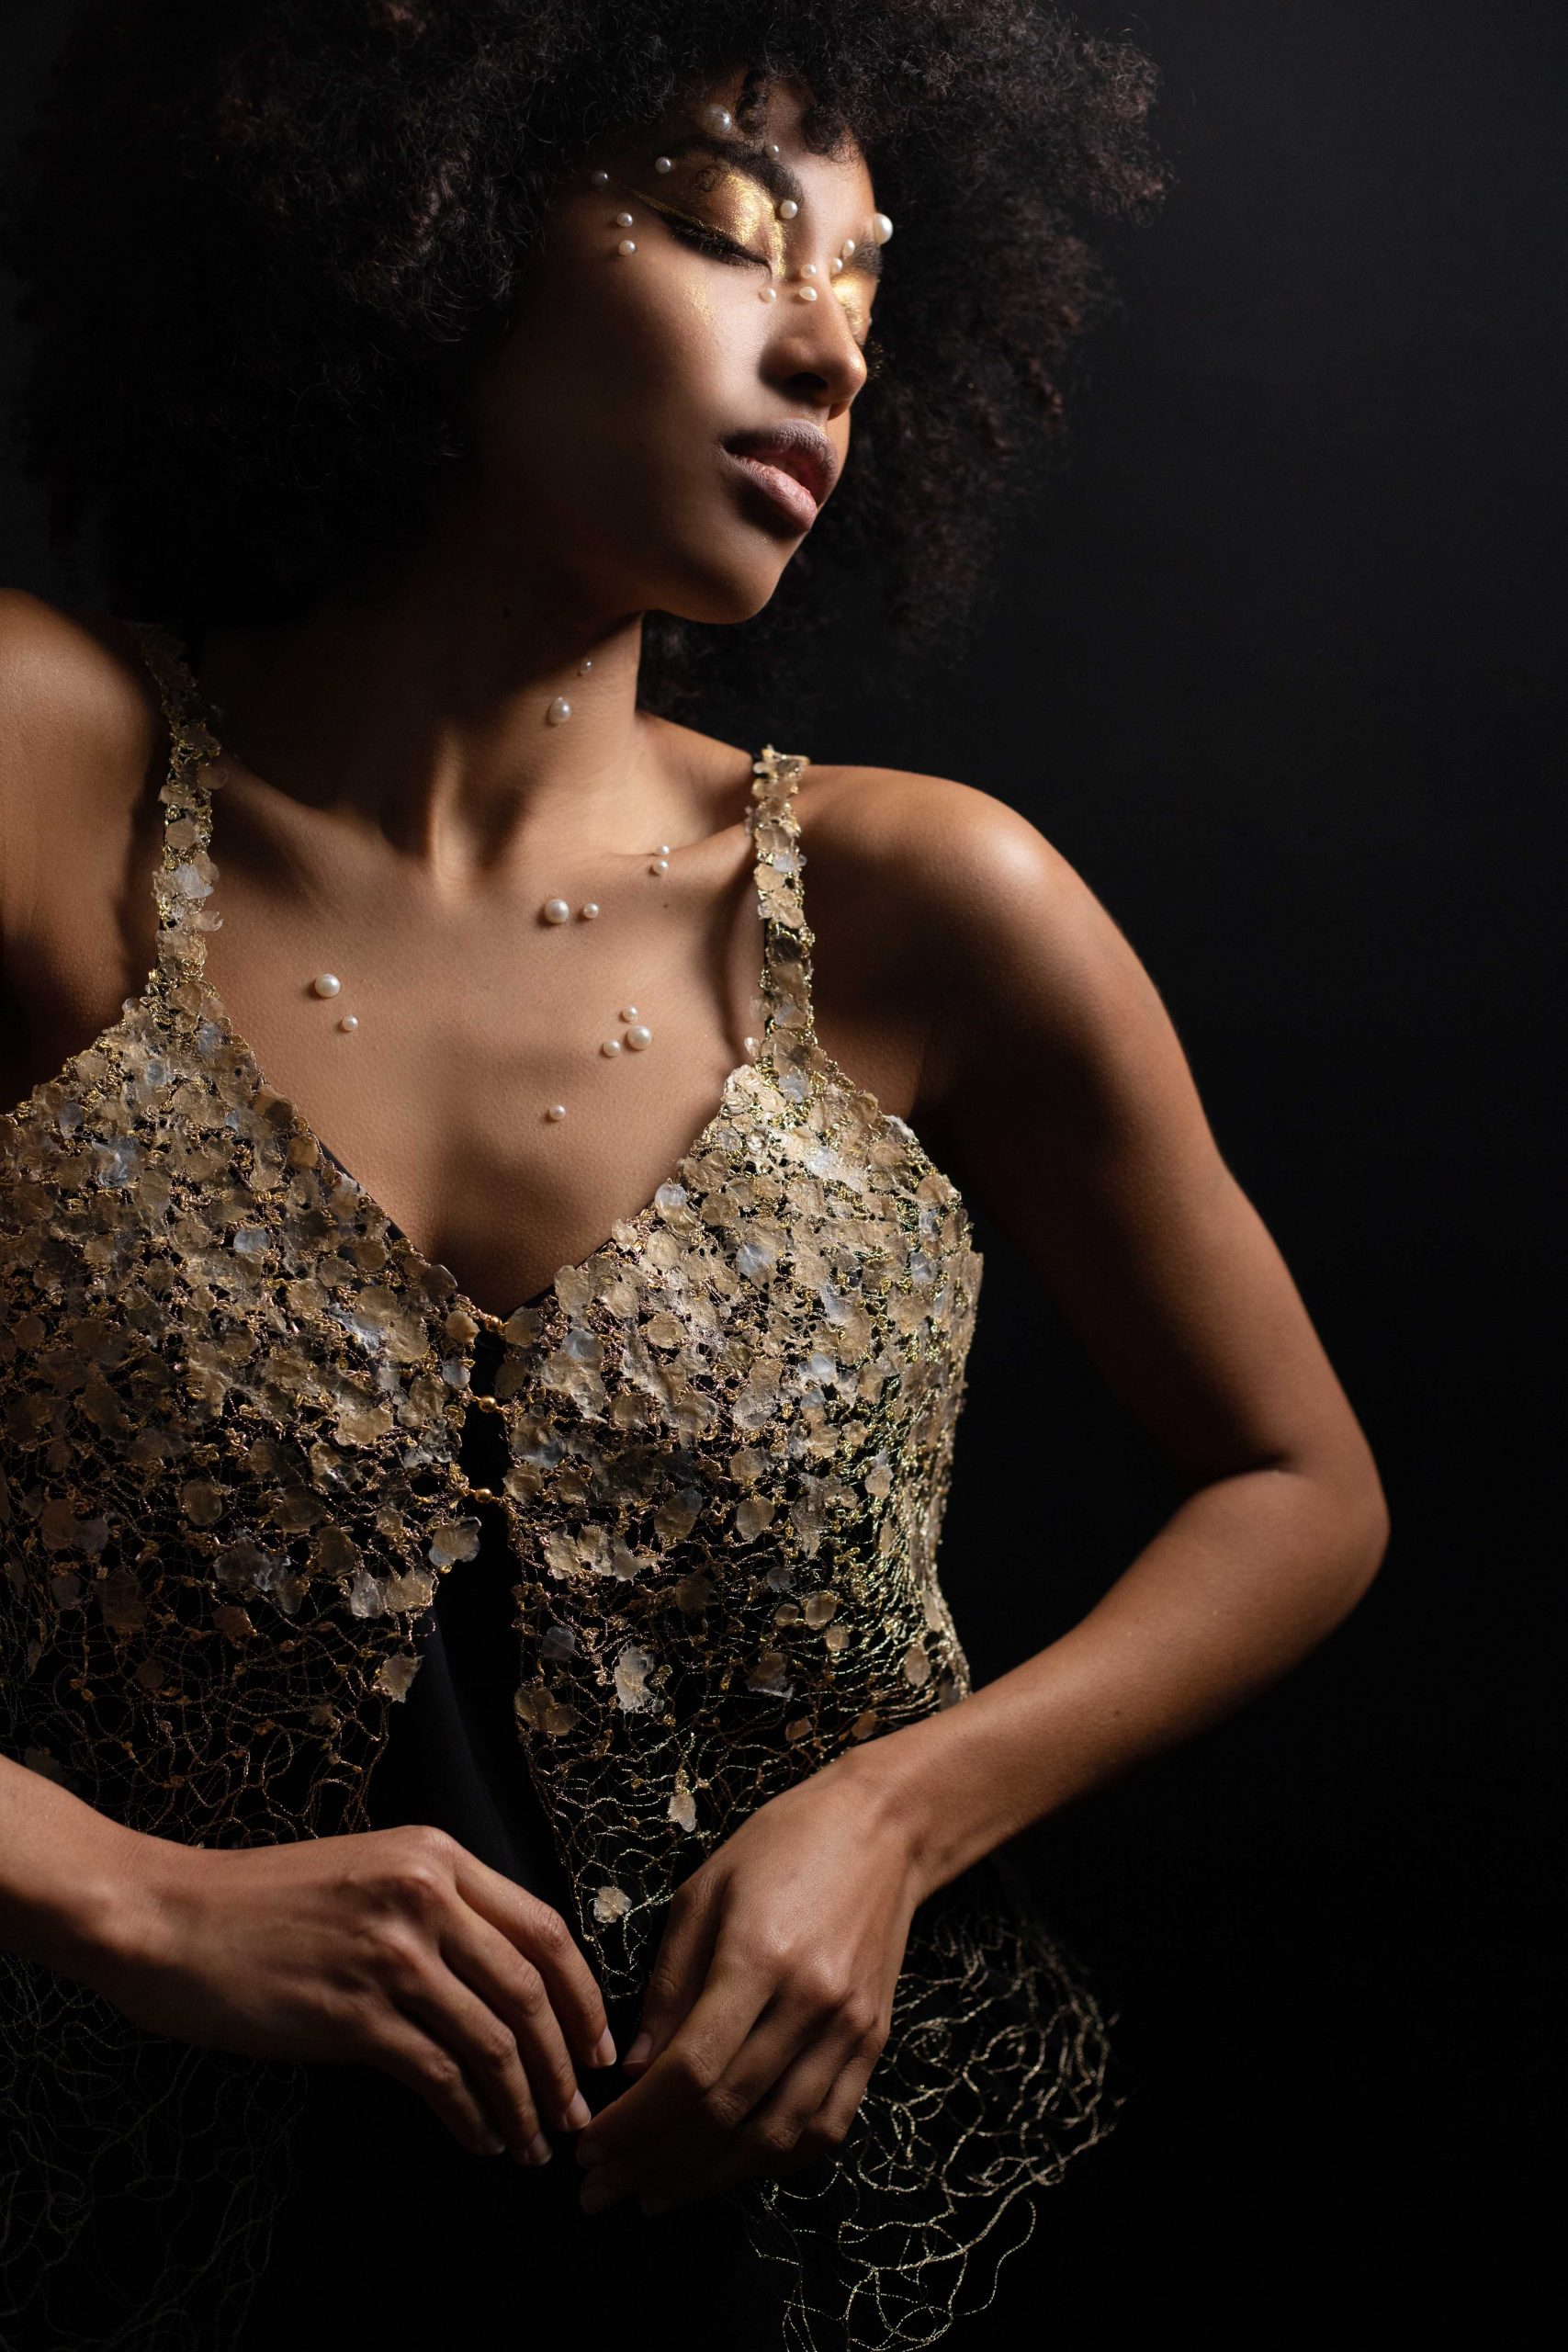 Jeune femme portant le bijou-vêtement Envol par dessus une robe à bretelles noires. Le top brodé est en parfaite superposition à la robe noire permettant ainsi de faire ressortir la broderie au fil d'or.